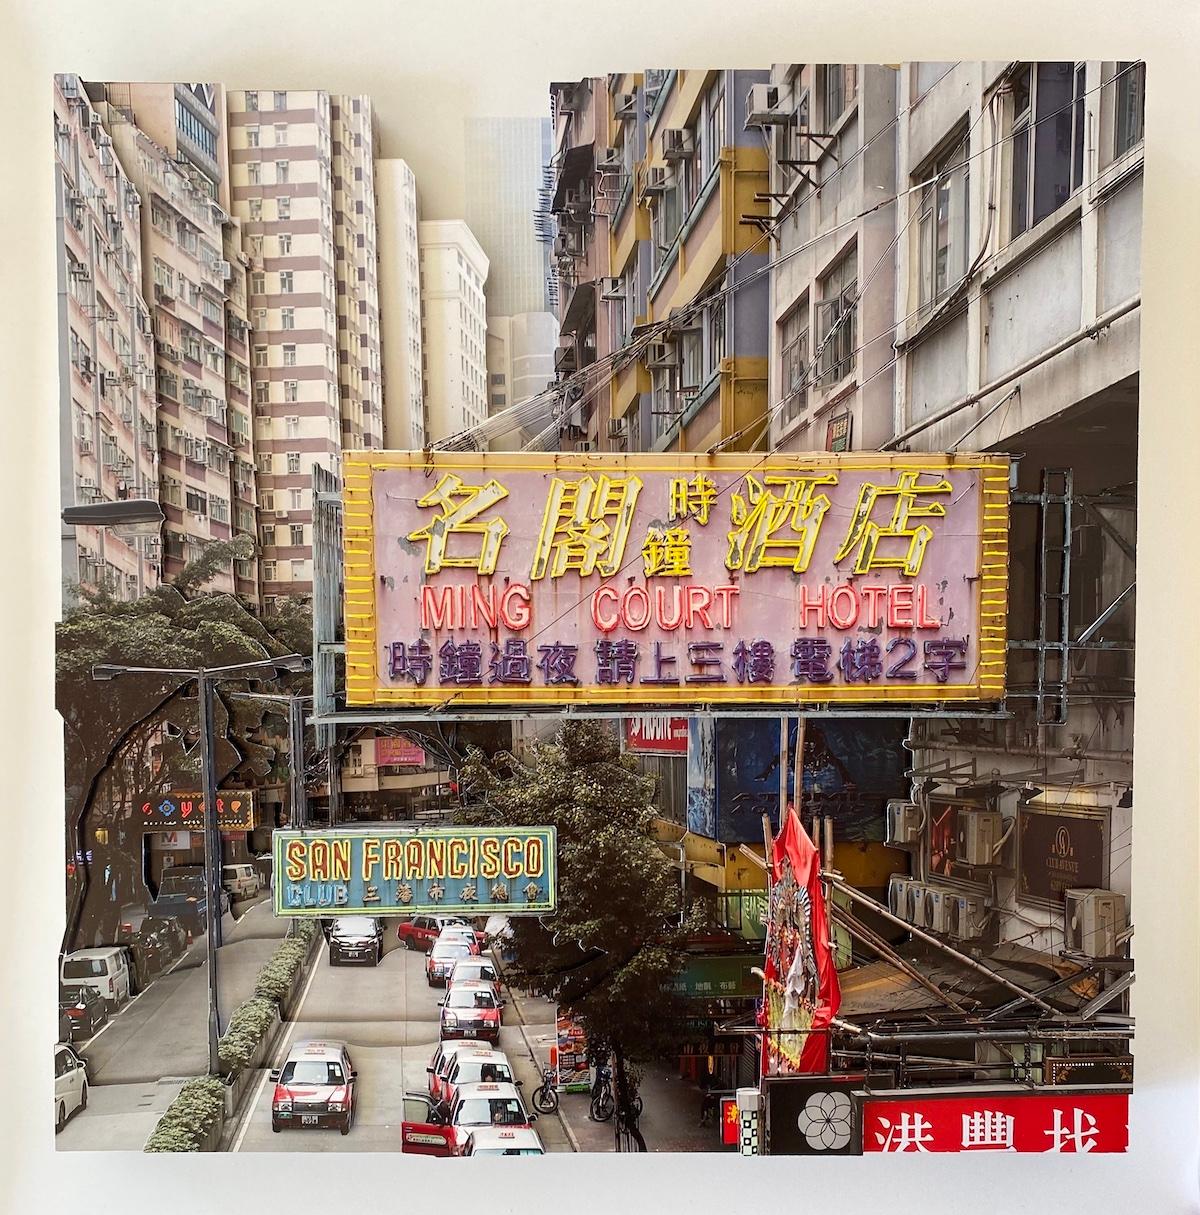 "Hôtel Ming Court", 2023

L'œuvre de Camille Levert est imprégnée de sa vie à Hong Kong. Ayant passé de nombreuses années à parcourir les rues avec son appareil photo, la ville et ses néons emblématiques...
Les lumières l'inspirent pour créer des